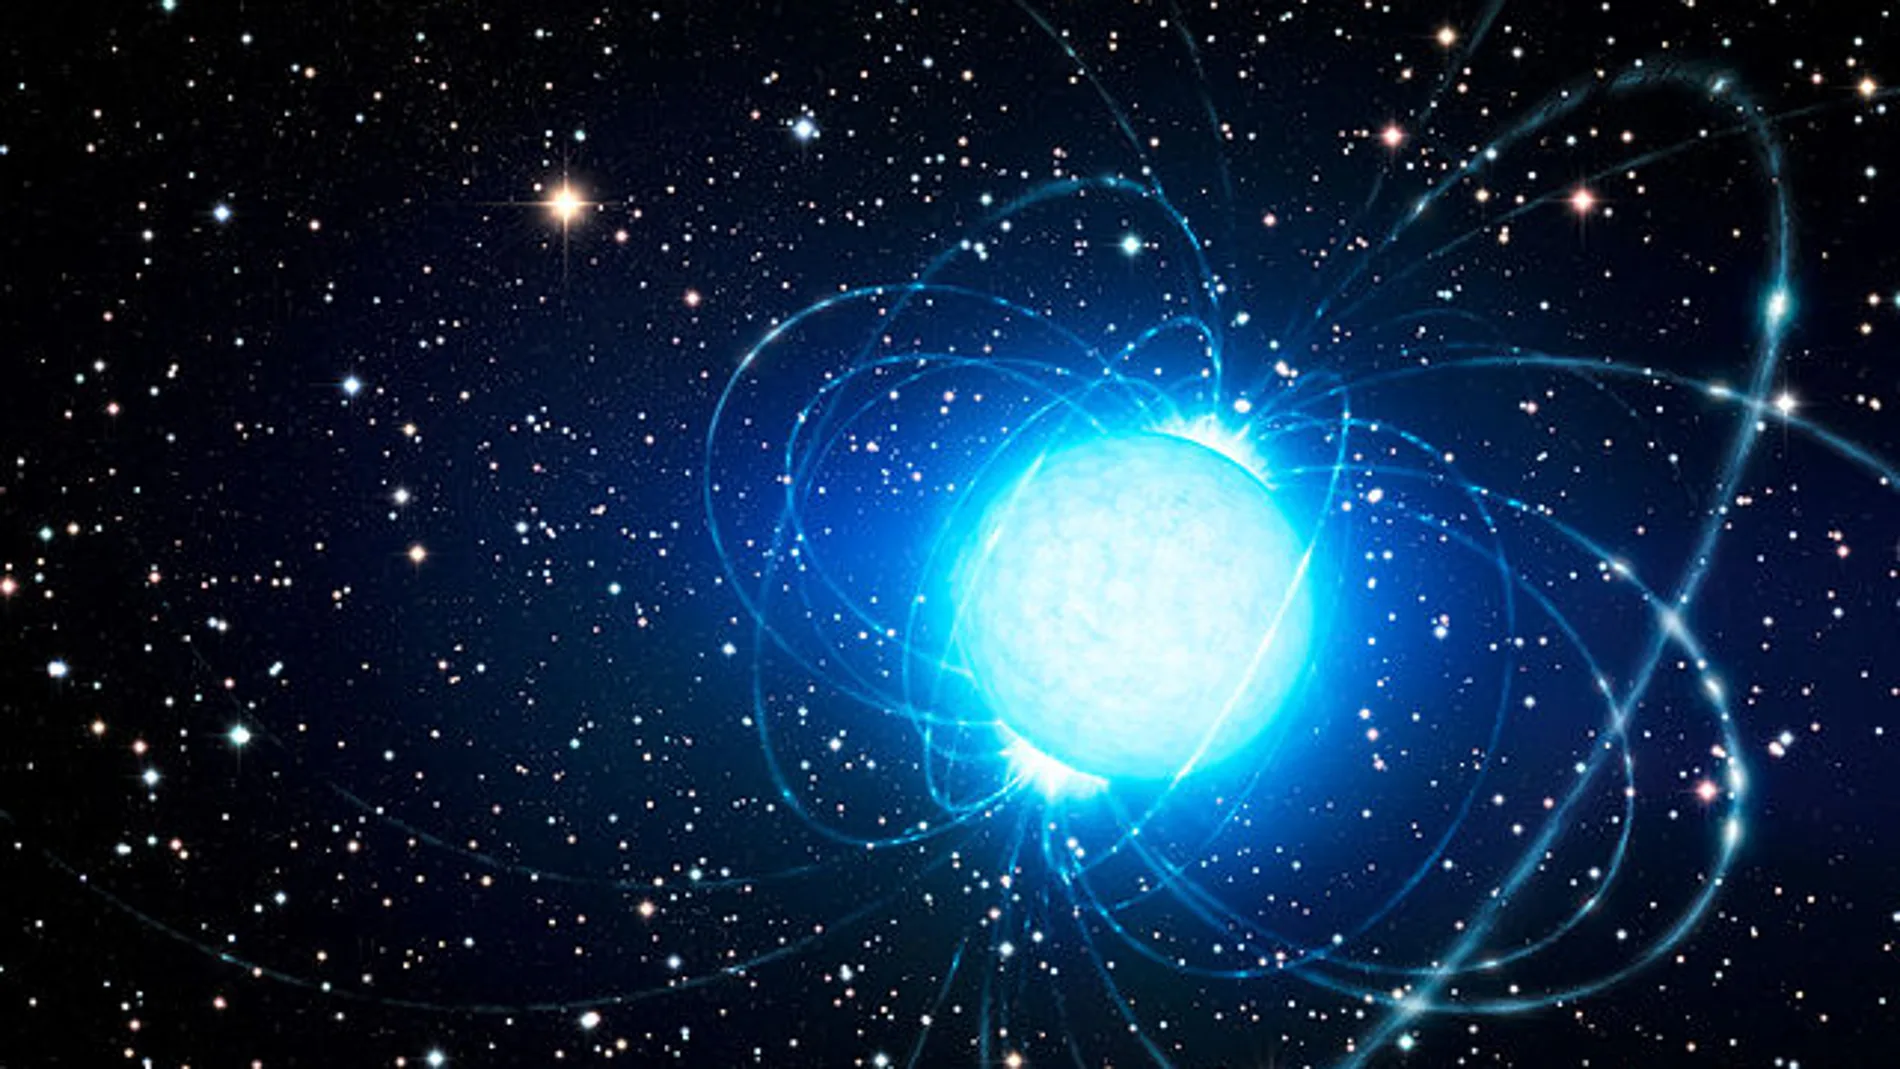 Representación artística de un magnetar en el clúster estelar Westerlund 1.